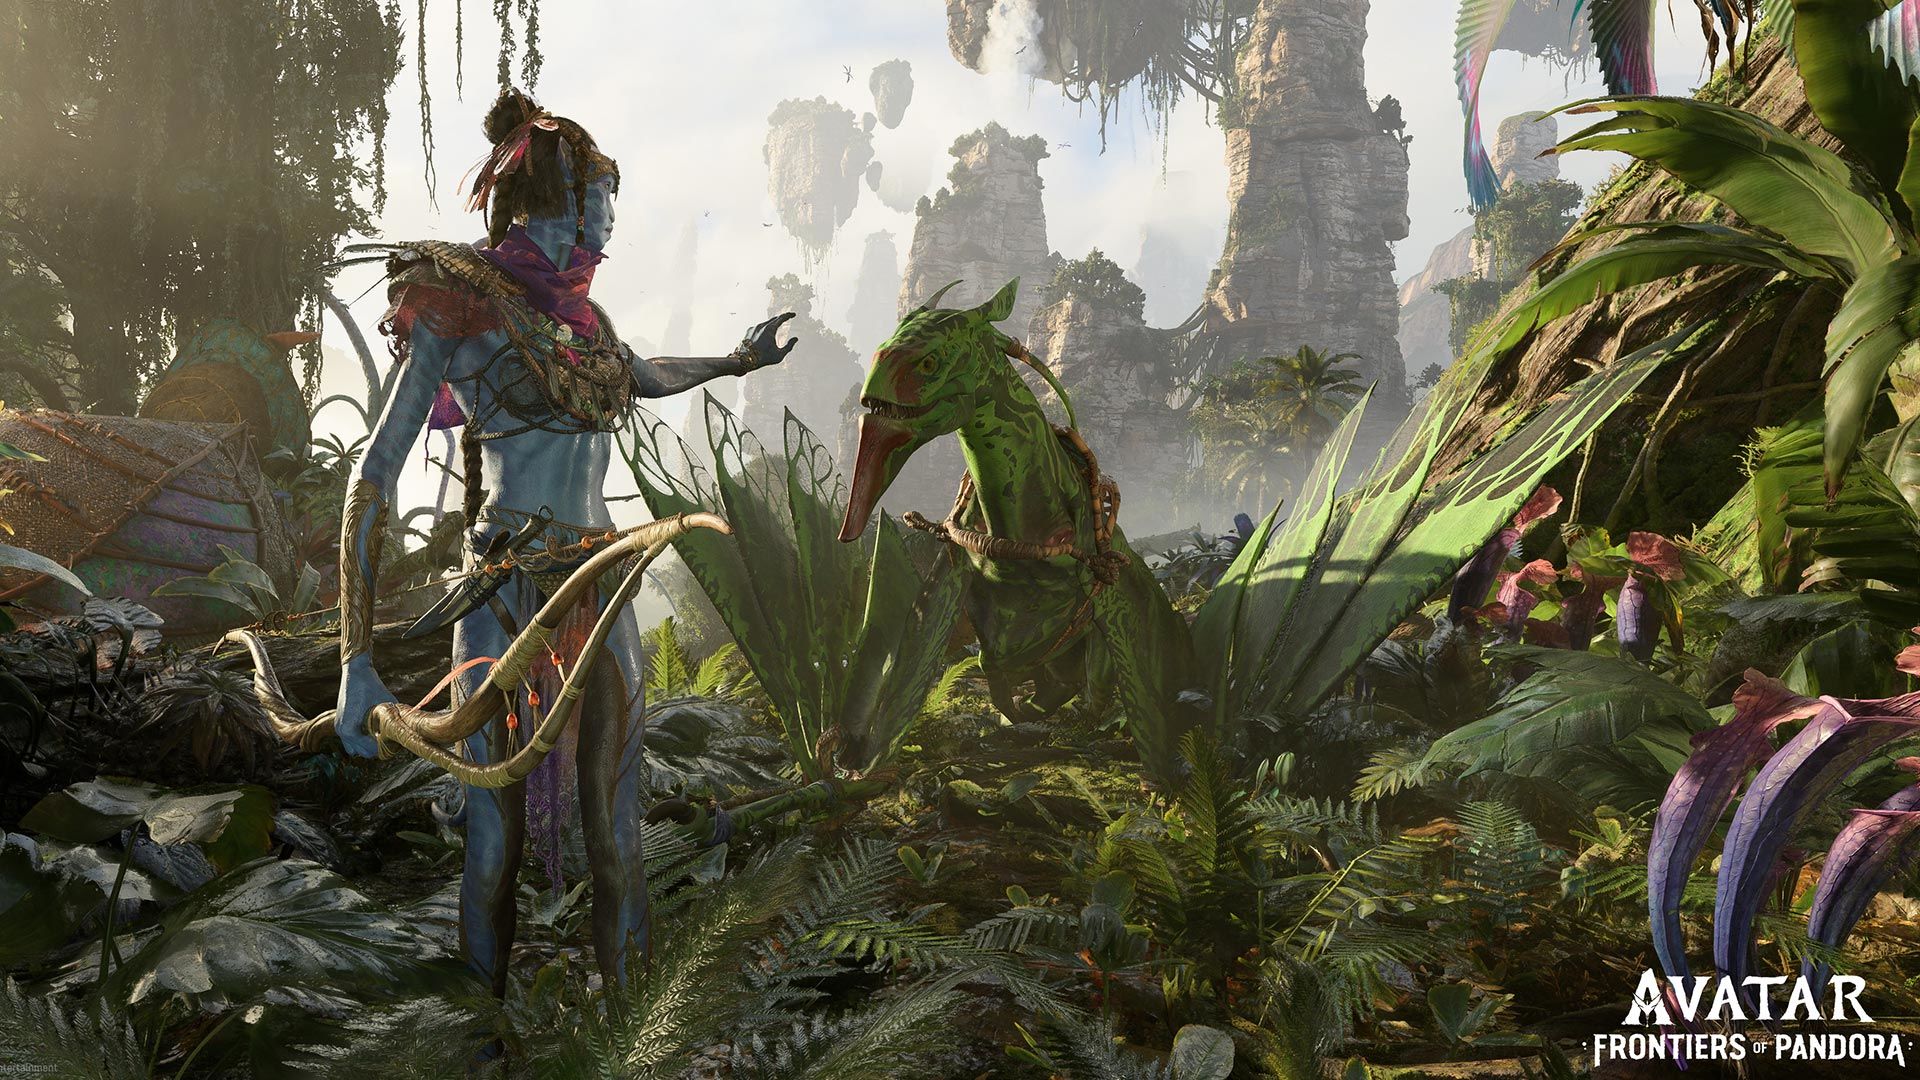 Avatar: Frontiers of Pandora, tựa game được mong chờ nhất trong năm 2024, sẽ mang đến cho bạn một trải nghiệm chưa từng có. Kết hợp công nghệ 3D mới nhất, game sẽ đưa bạn đến những cảnh vật kỳ vĩ của Pandora với độ chân thực tuyệt đối. Hãy cùng xem hình ảnh đầu tiên để đắm chìm vào thế giới tuyệt vời này.